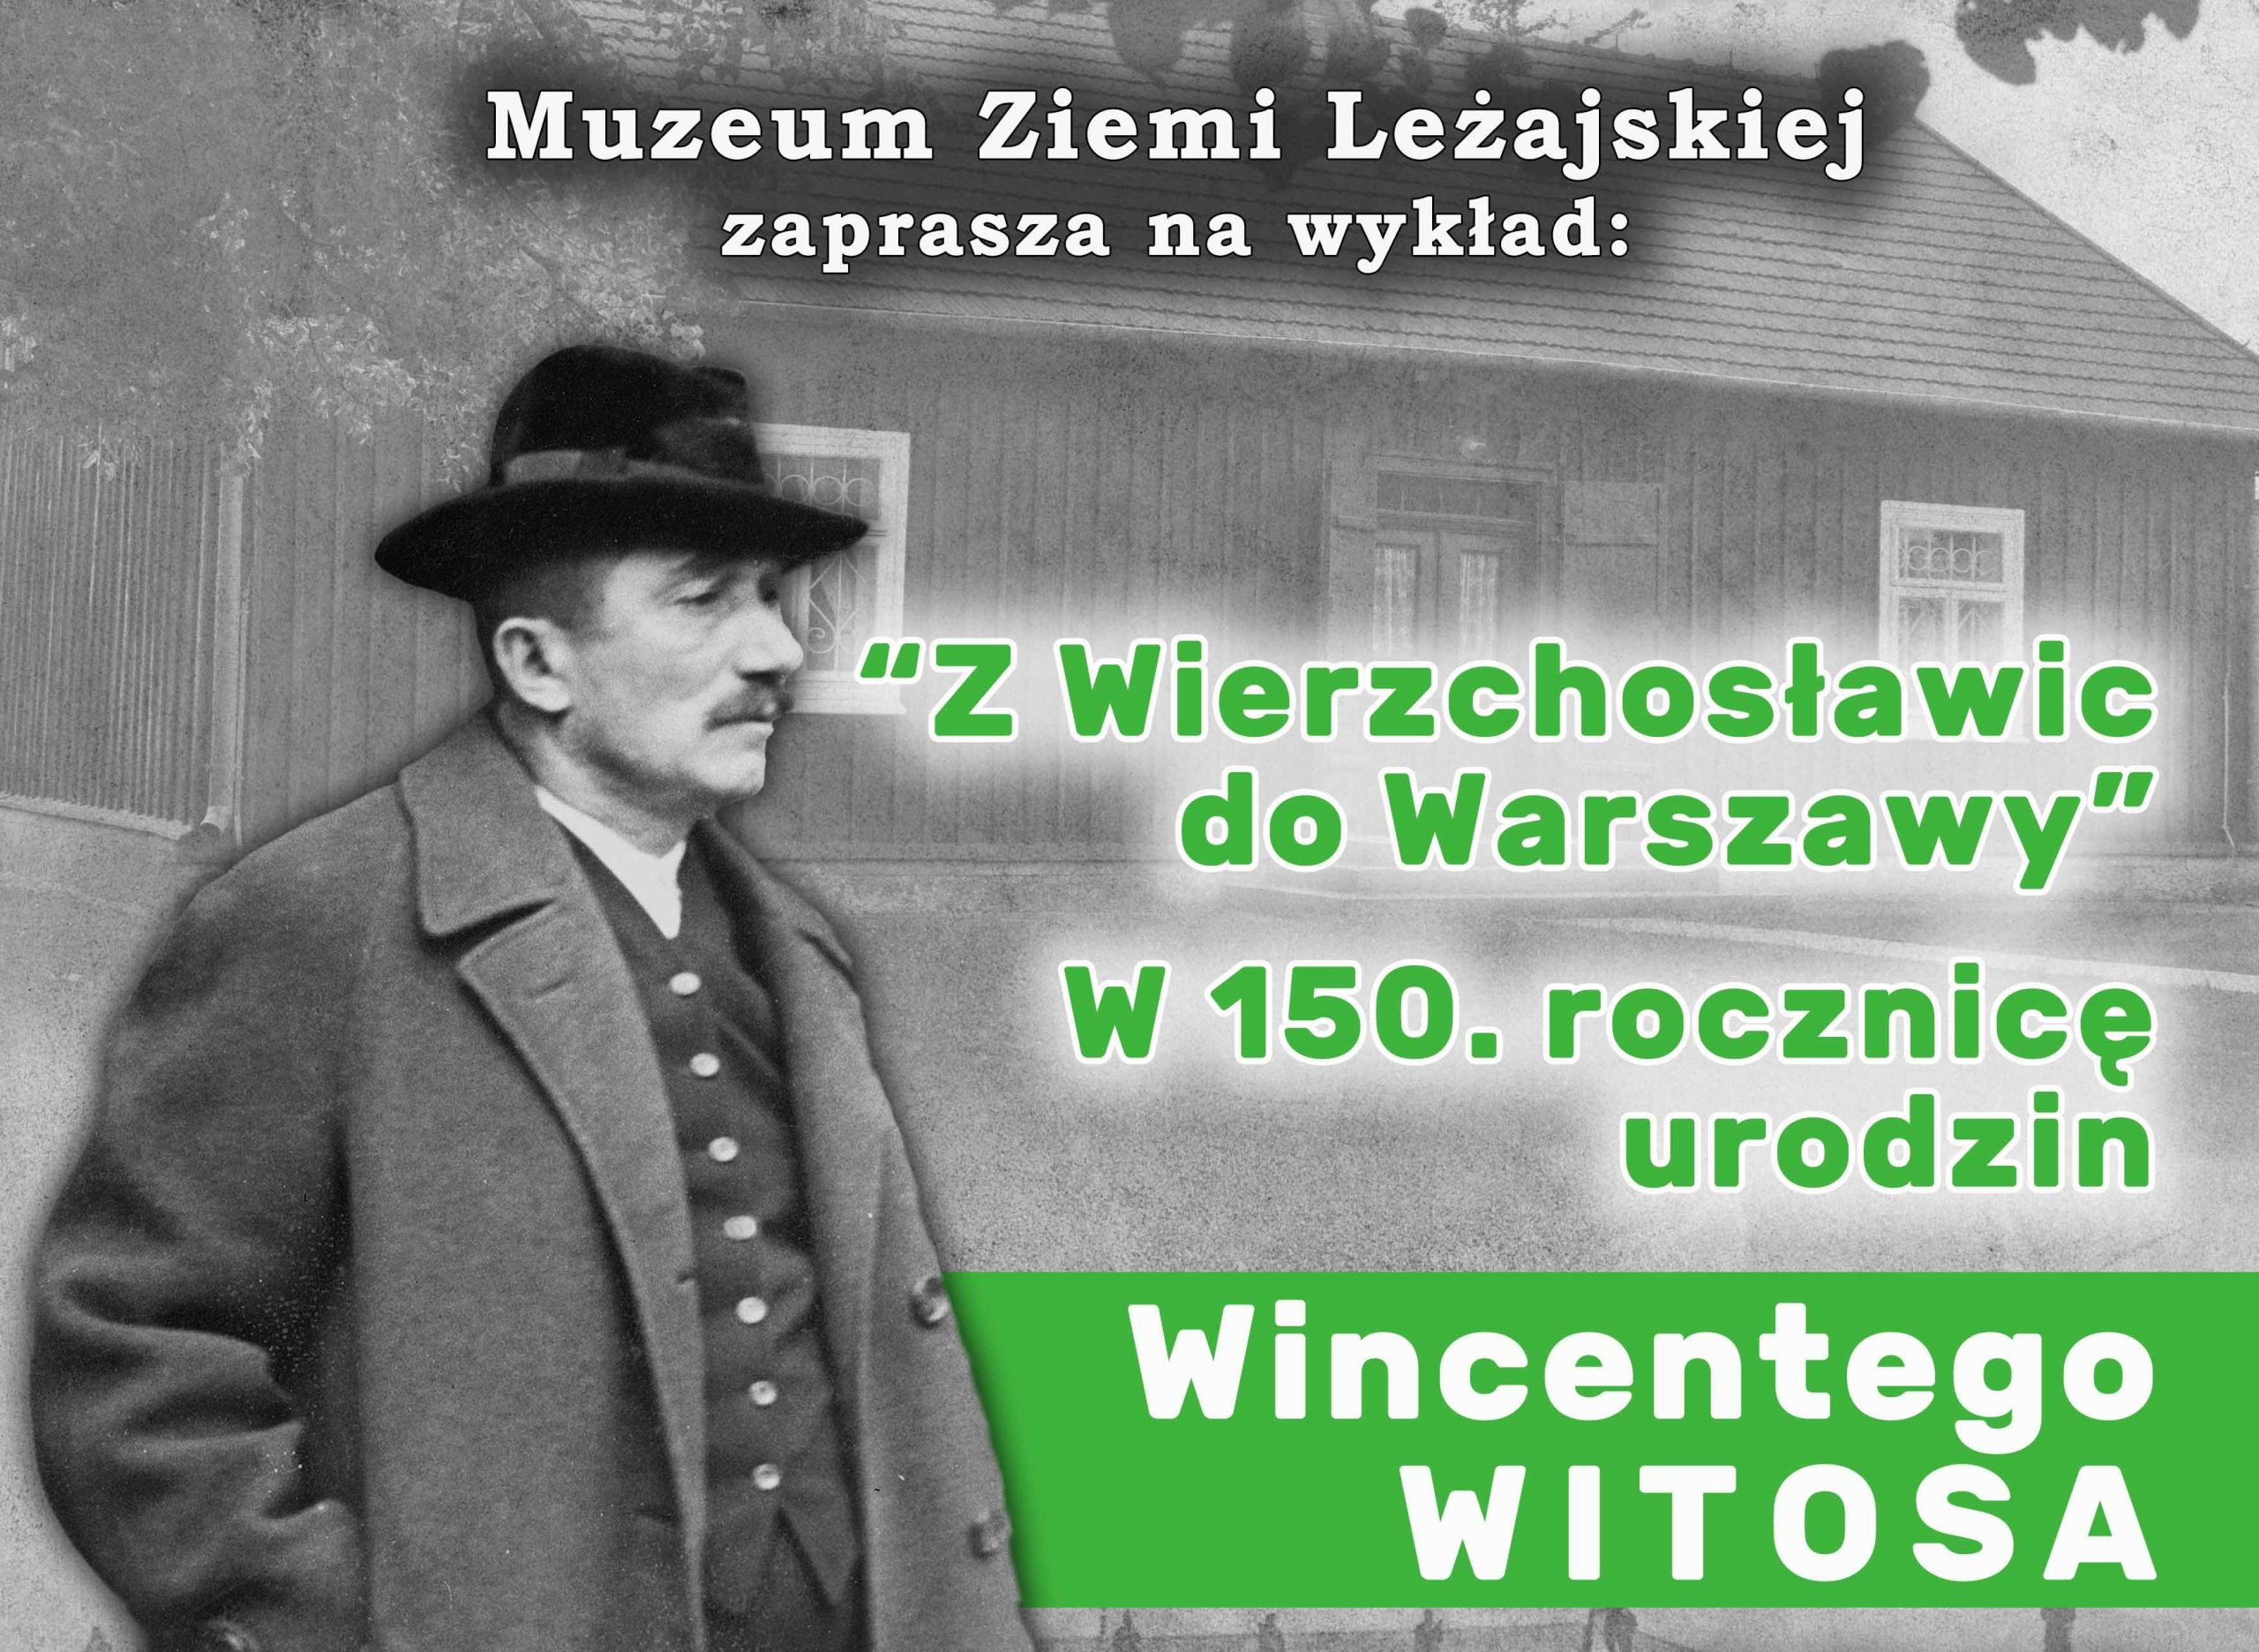  „Z Wierzchosławic do Warszawy”. W 150. rocznicę urodzenia Wincentego Witosa – Muzeum Ziemi Leżajskiej zaprasza na wykład